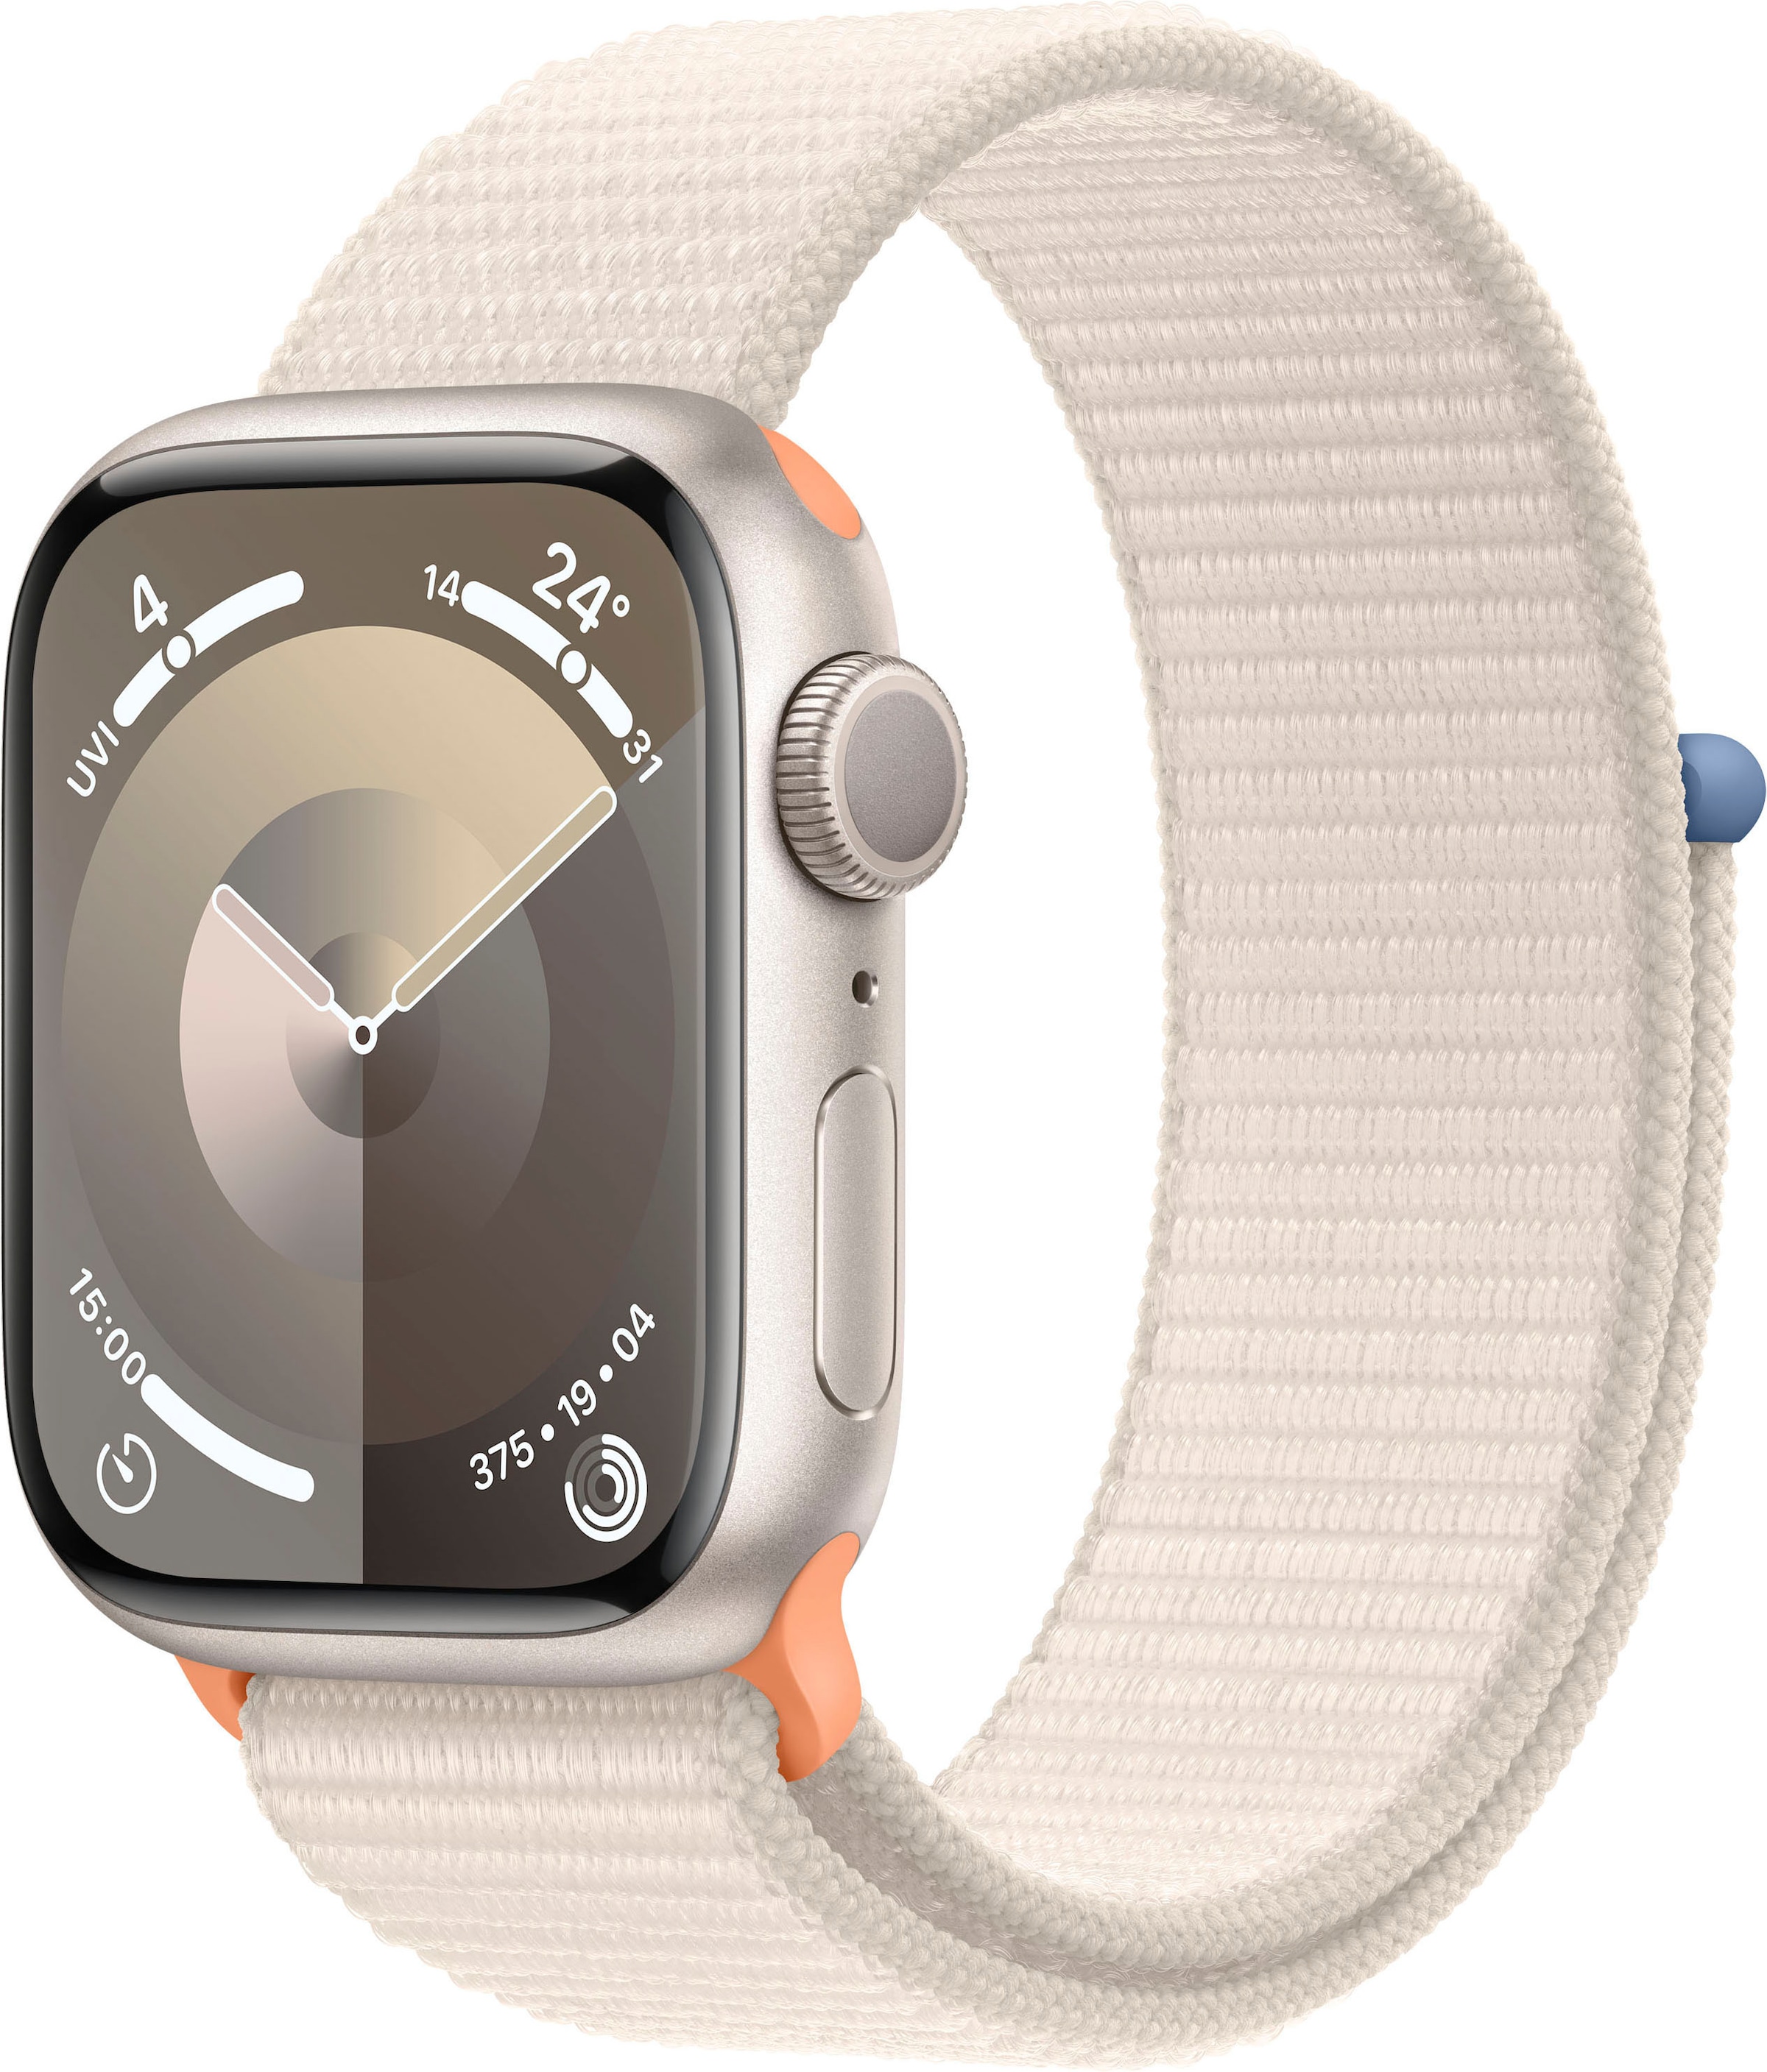 Apple Smartwatch OS 9 Series bestellen Aluminium«, 10 Sport 45mm GPS »Watch bei Loop) OTTO Cellular + (Watch